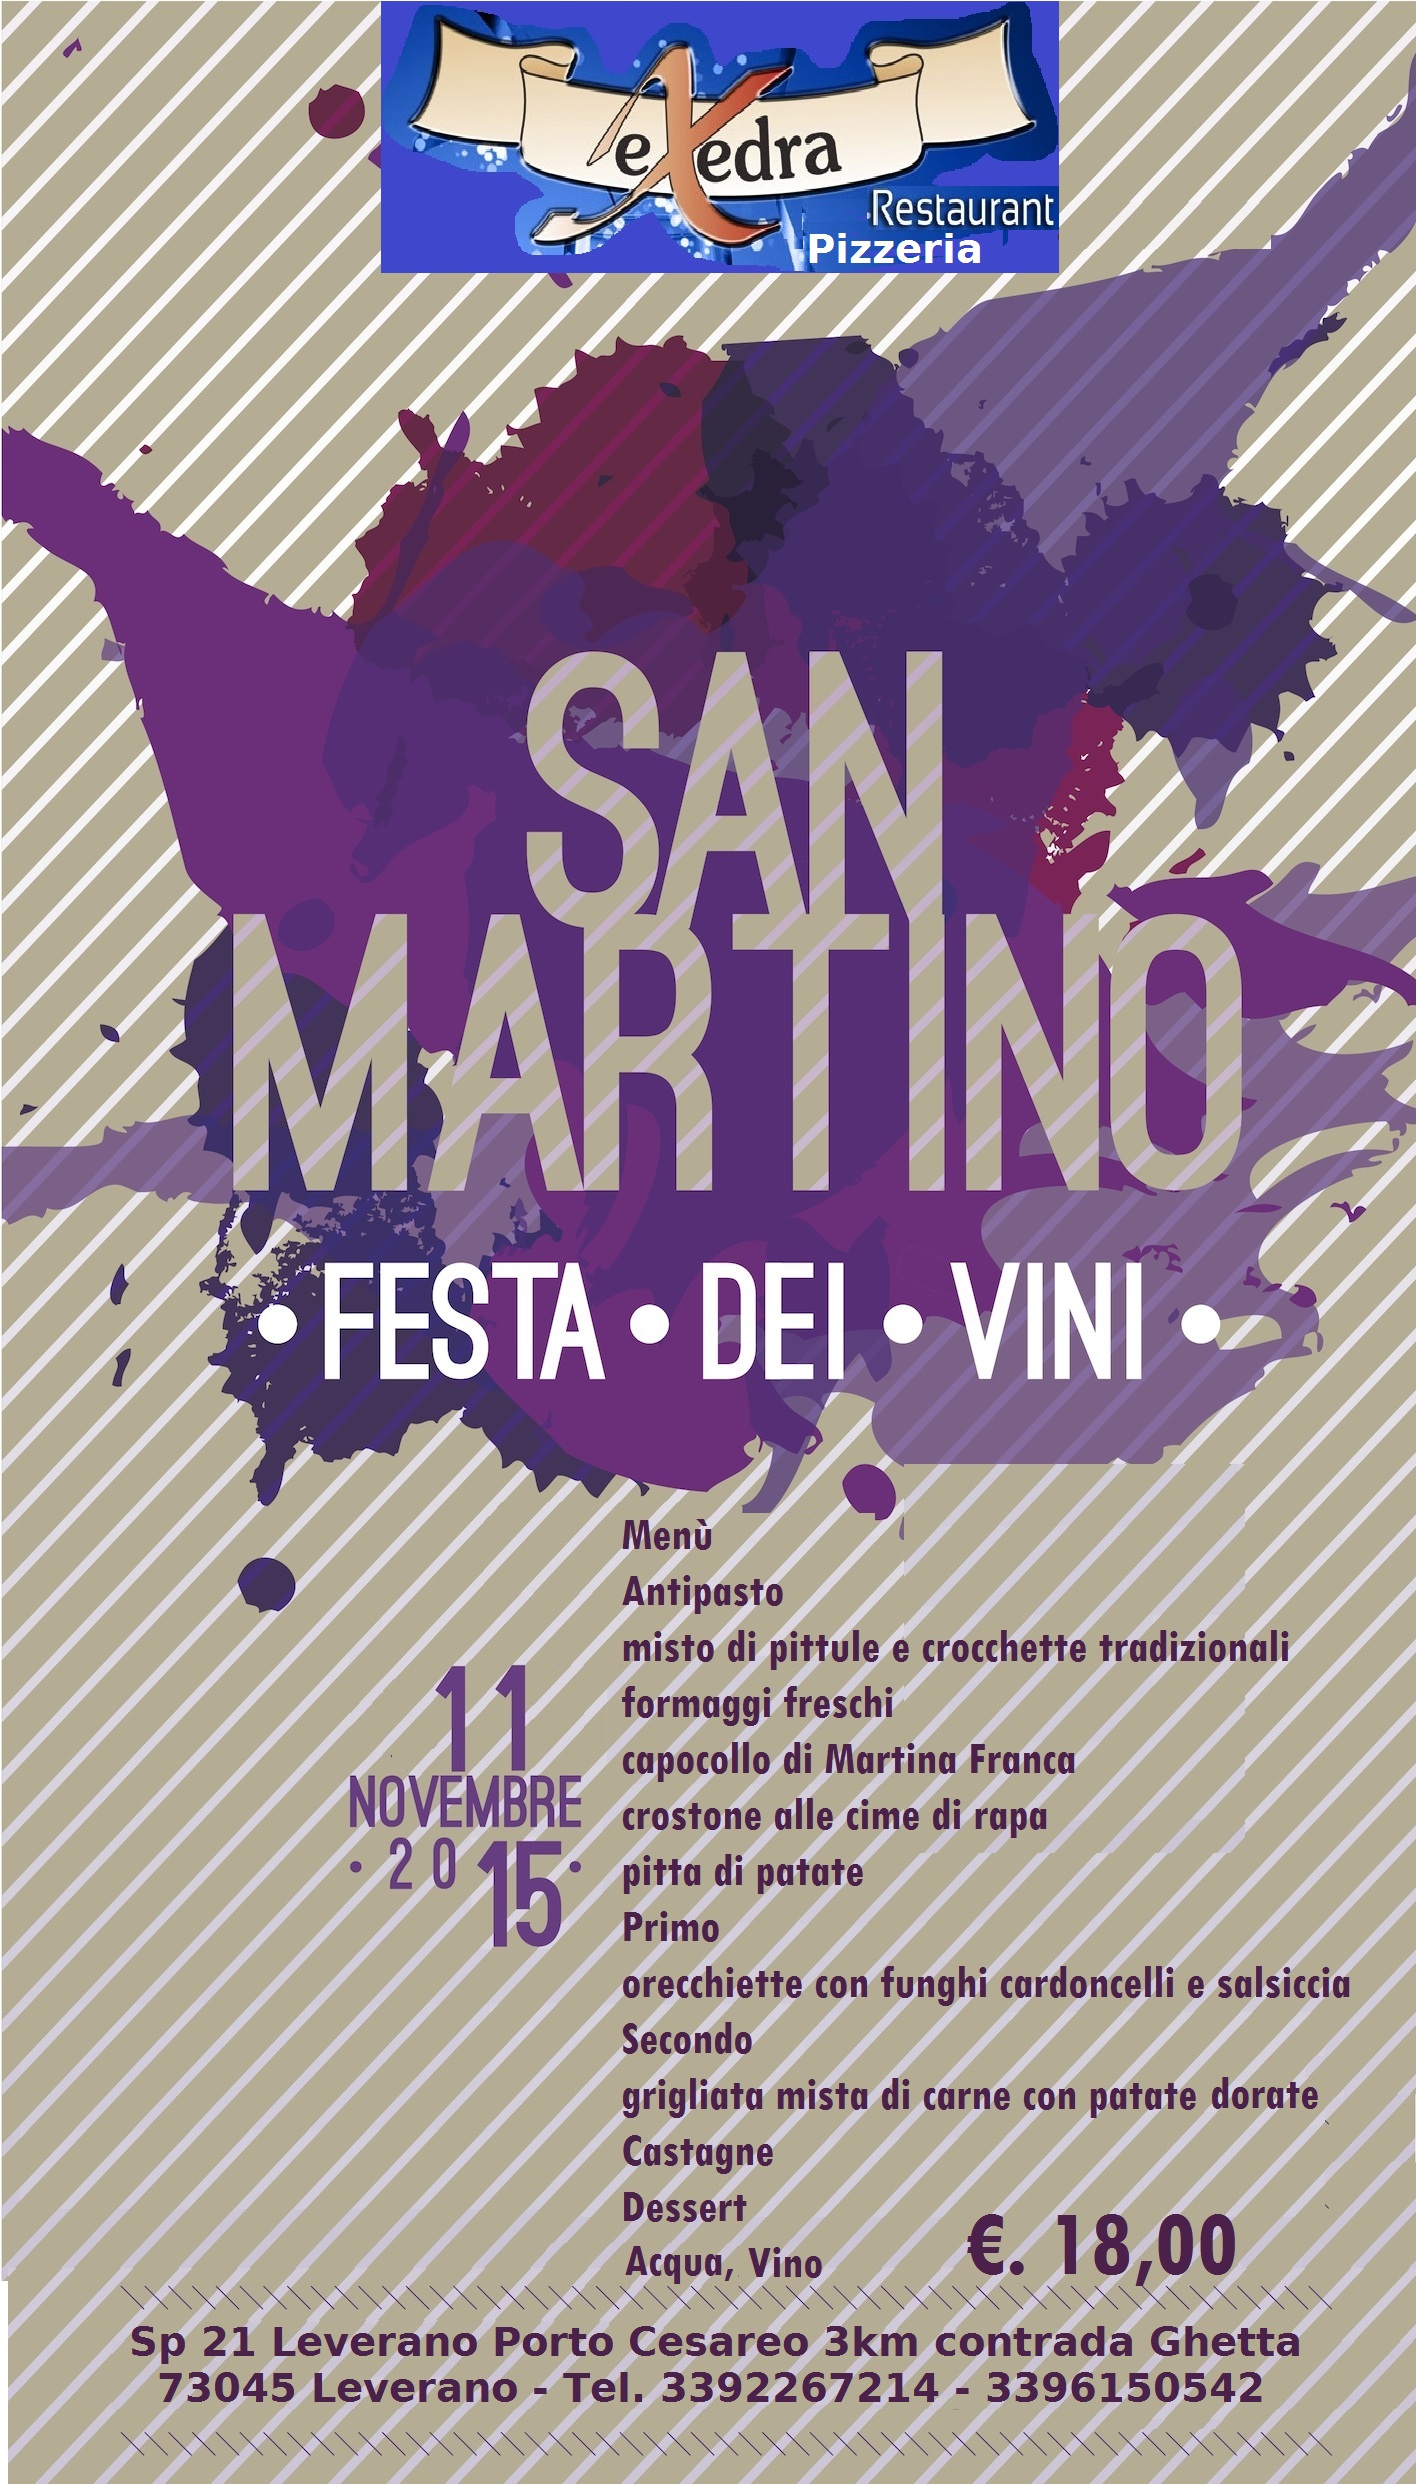 Eccezionale … San Martino 2015